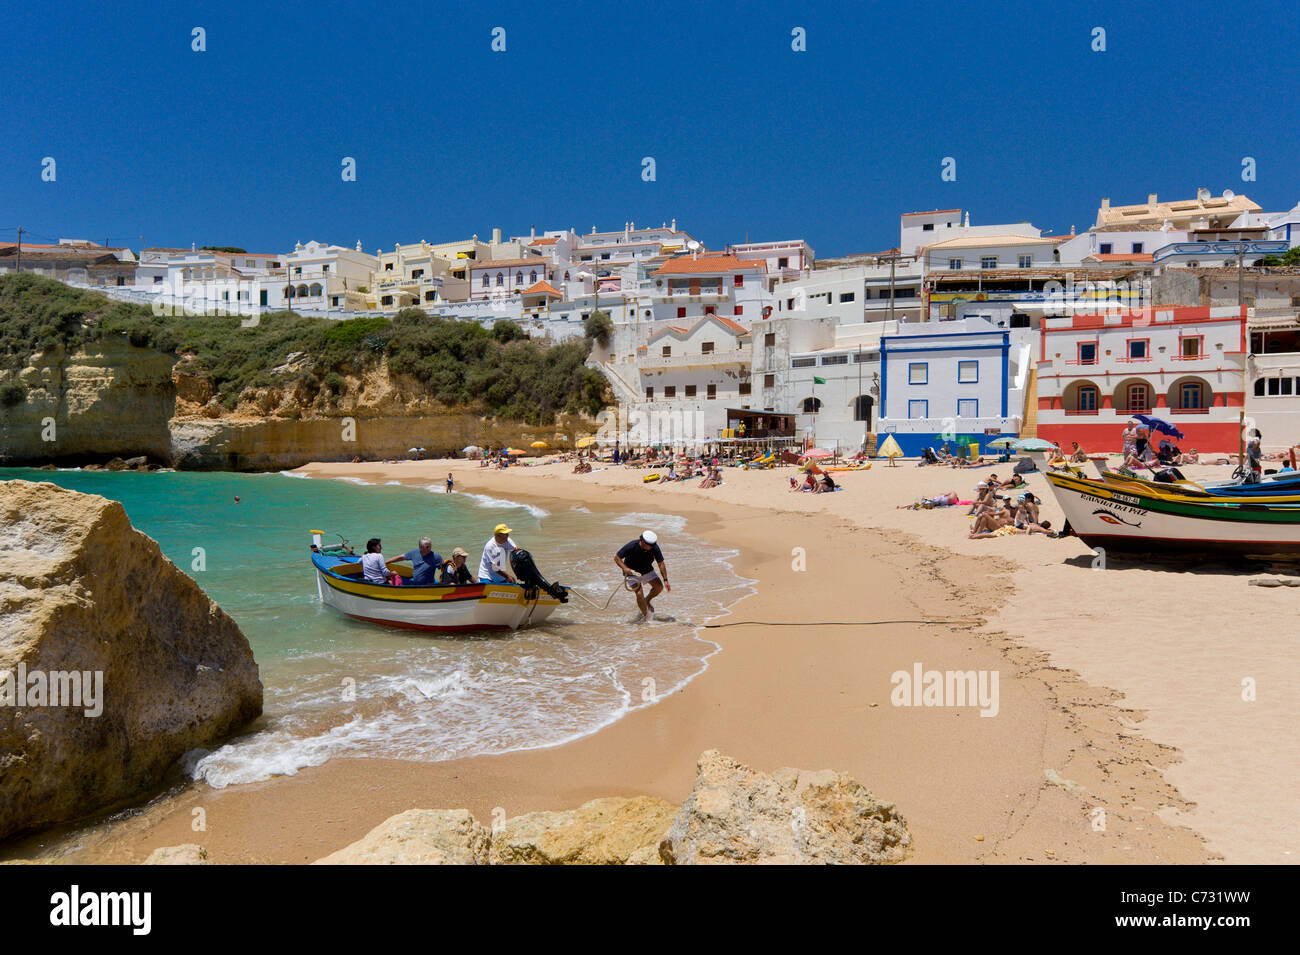 Le Portugal, l'Algarve, Praia do Carvoeiro ville et de la plage avec un bateau de pêche qui reviennent d'un voyage en bateau avec les touristes Banque D'Images